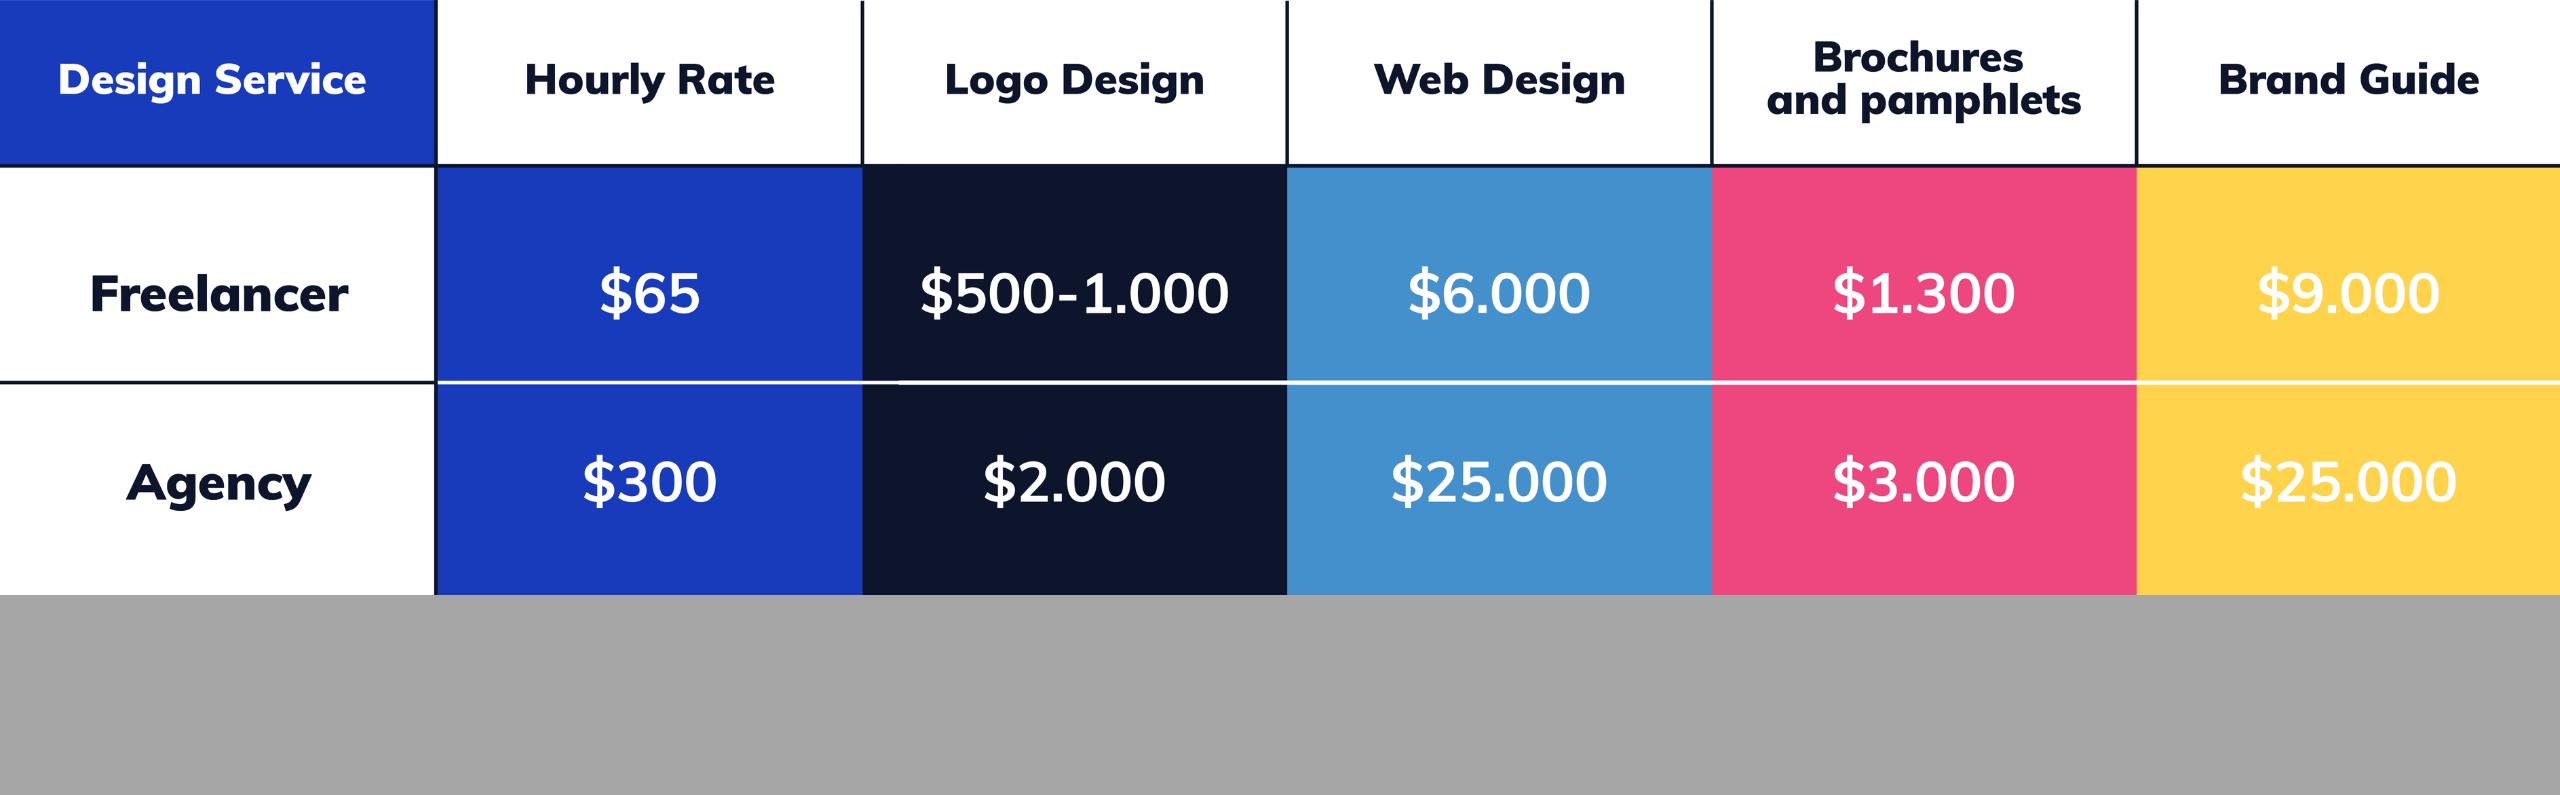 graphic design services price comparison